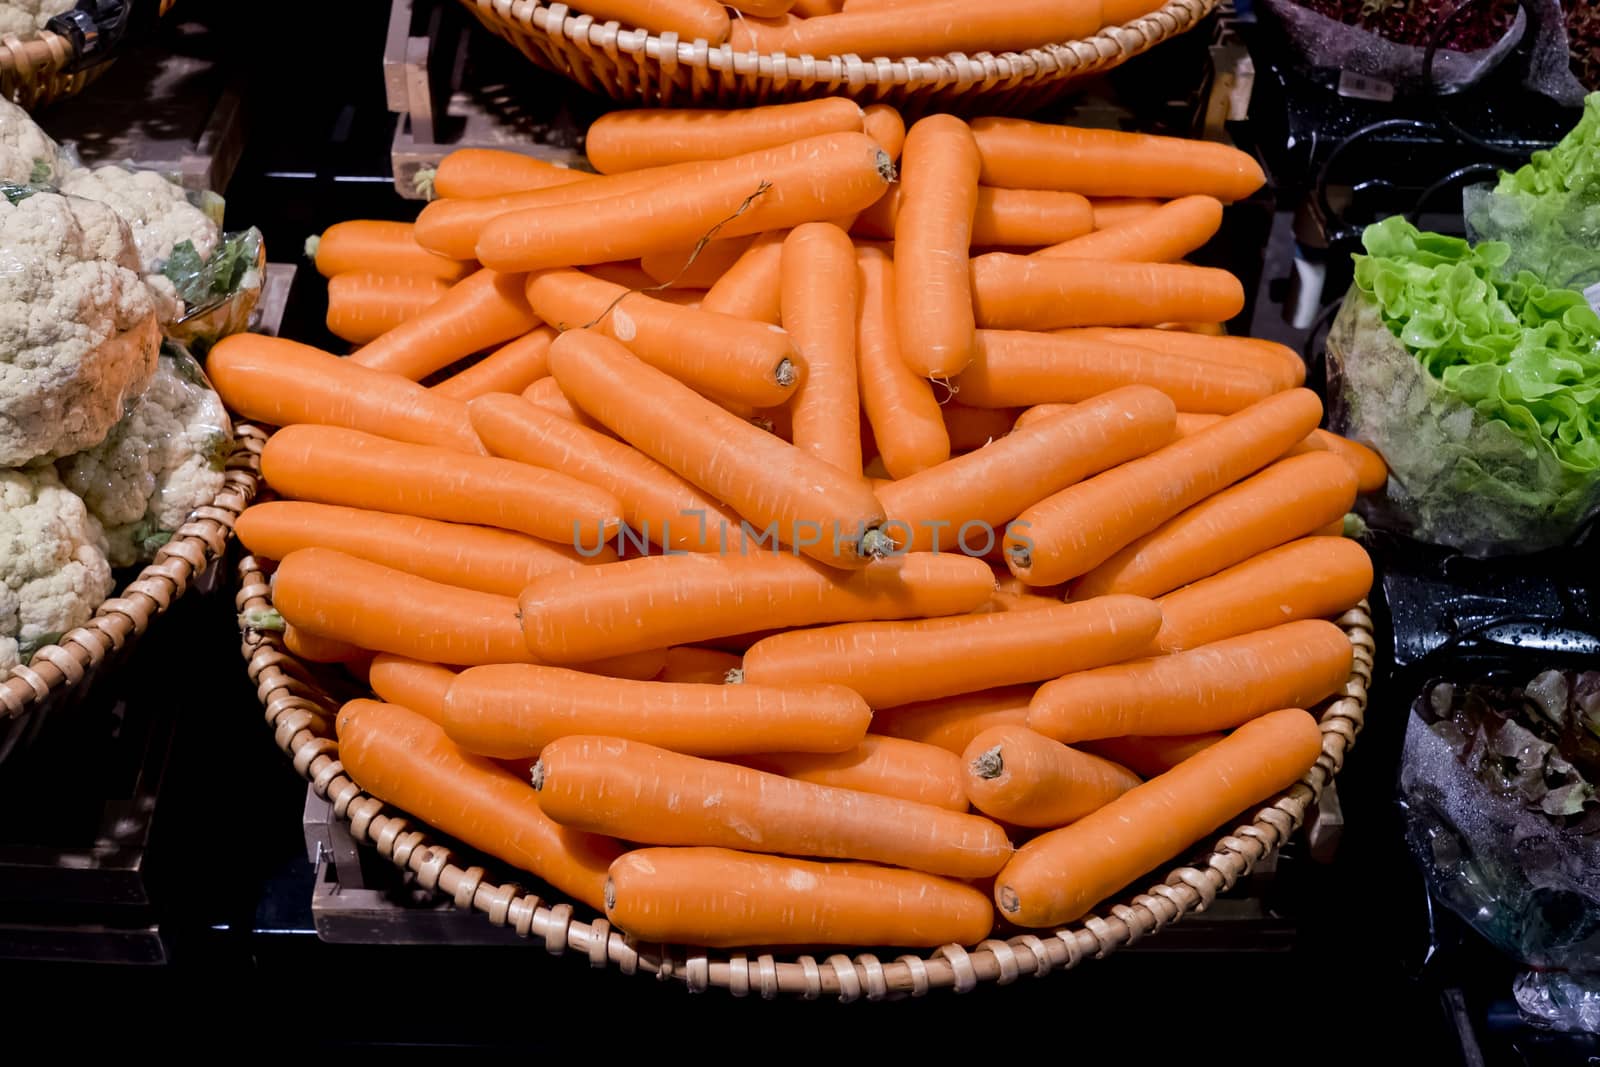 Carrot vegetable in supermarket